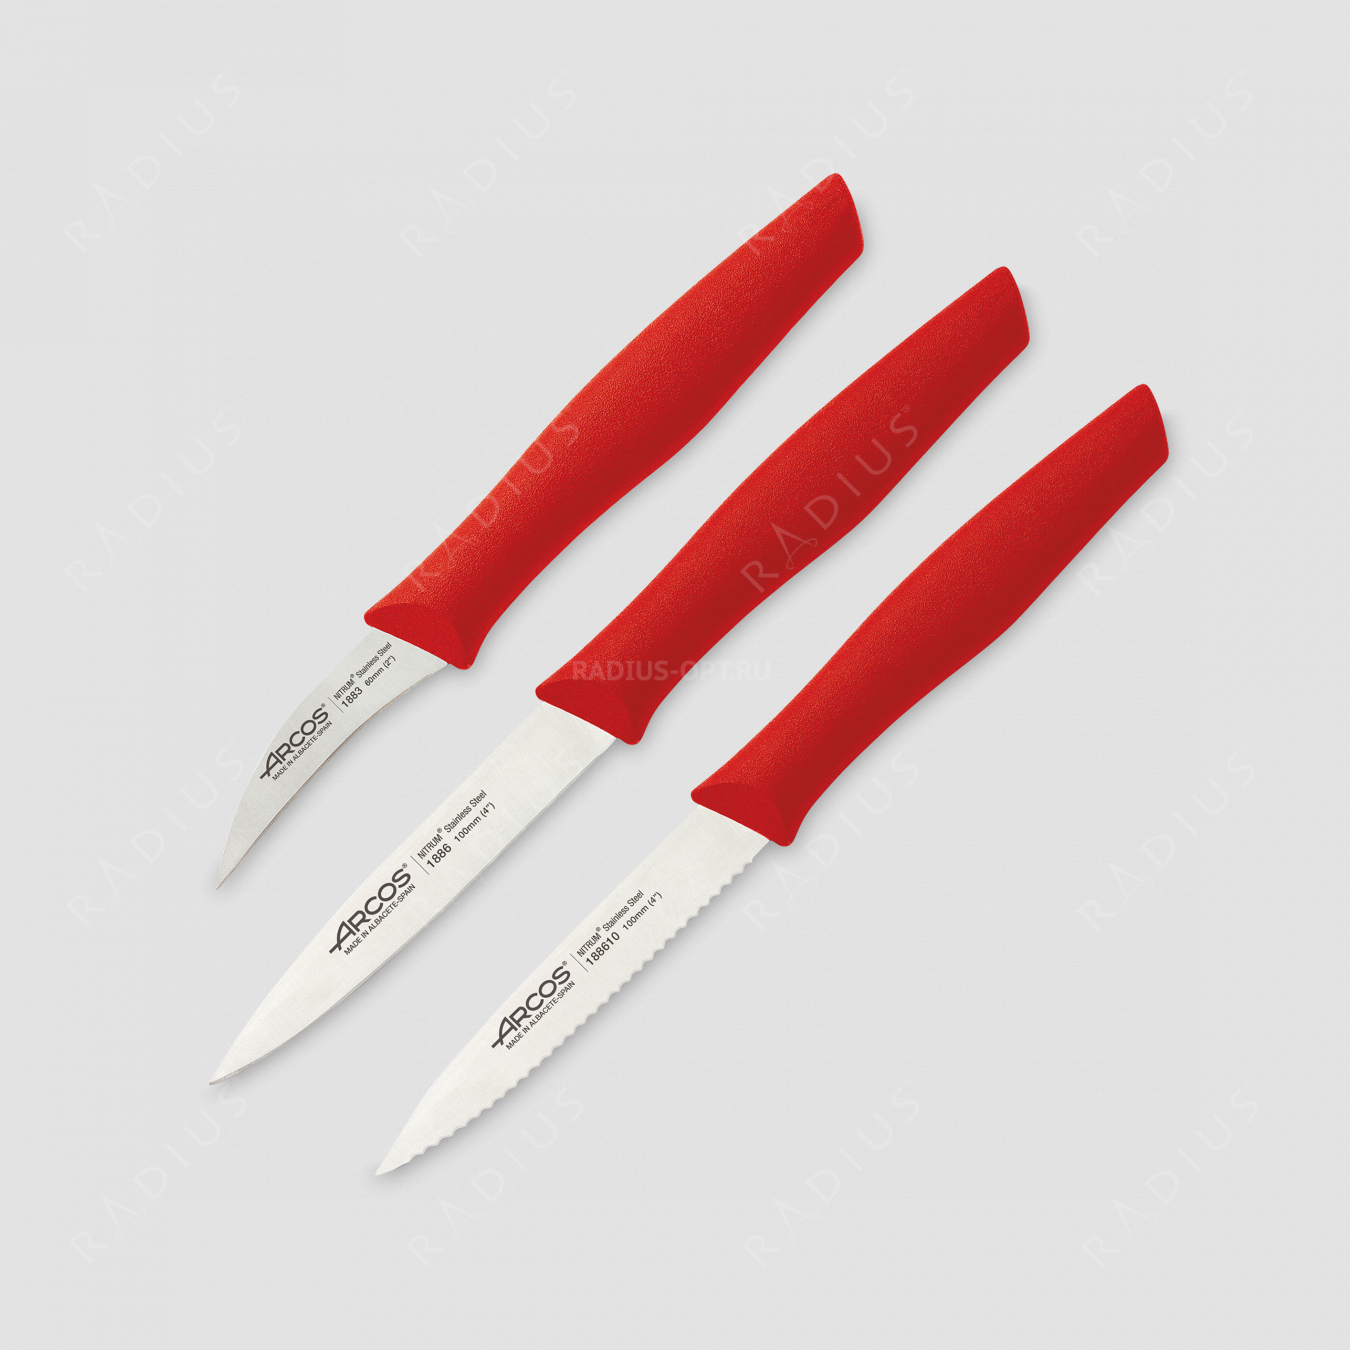 Набор из 3-х кухонных ножей для чистки и нарезки овощей, рукоять красная, серия Nova, ARCOS, Испания